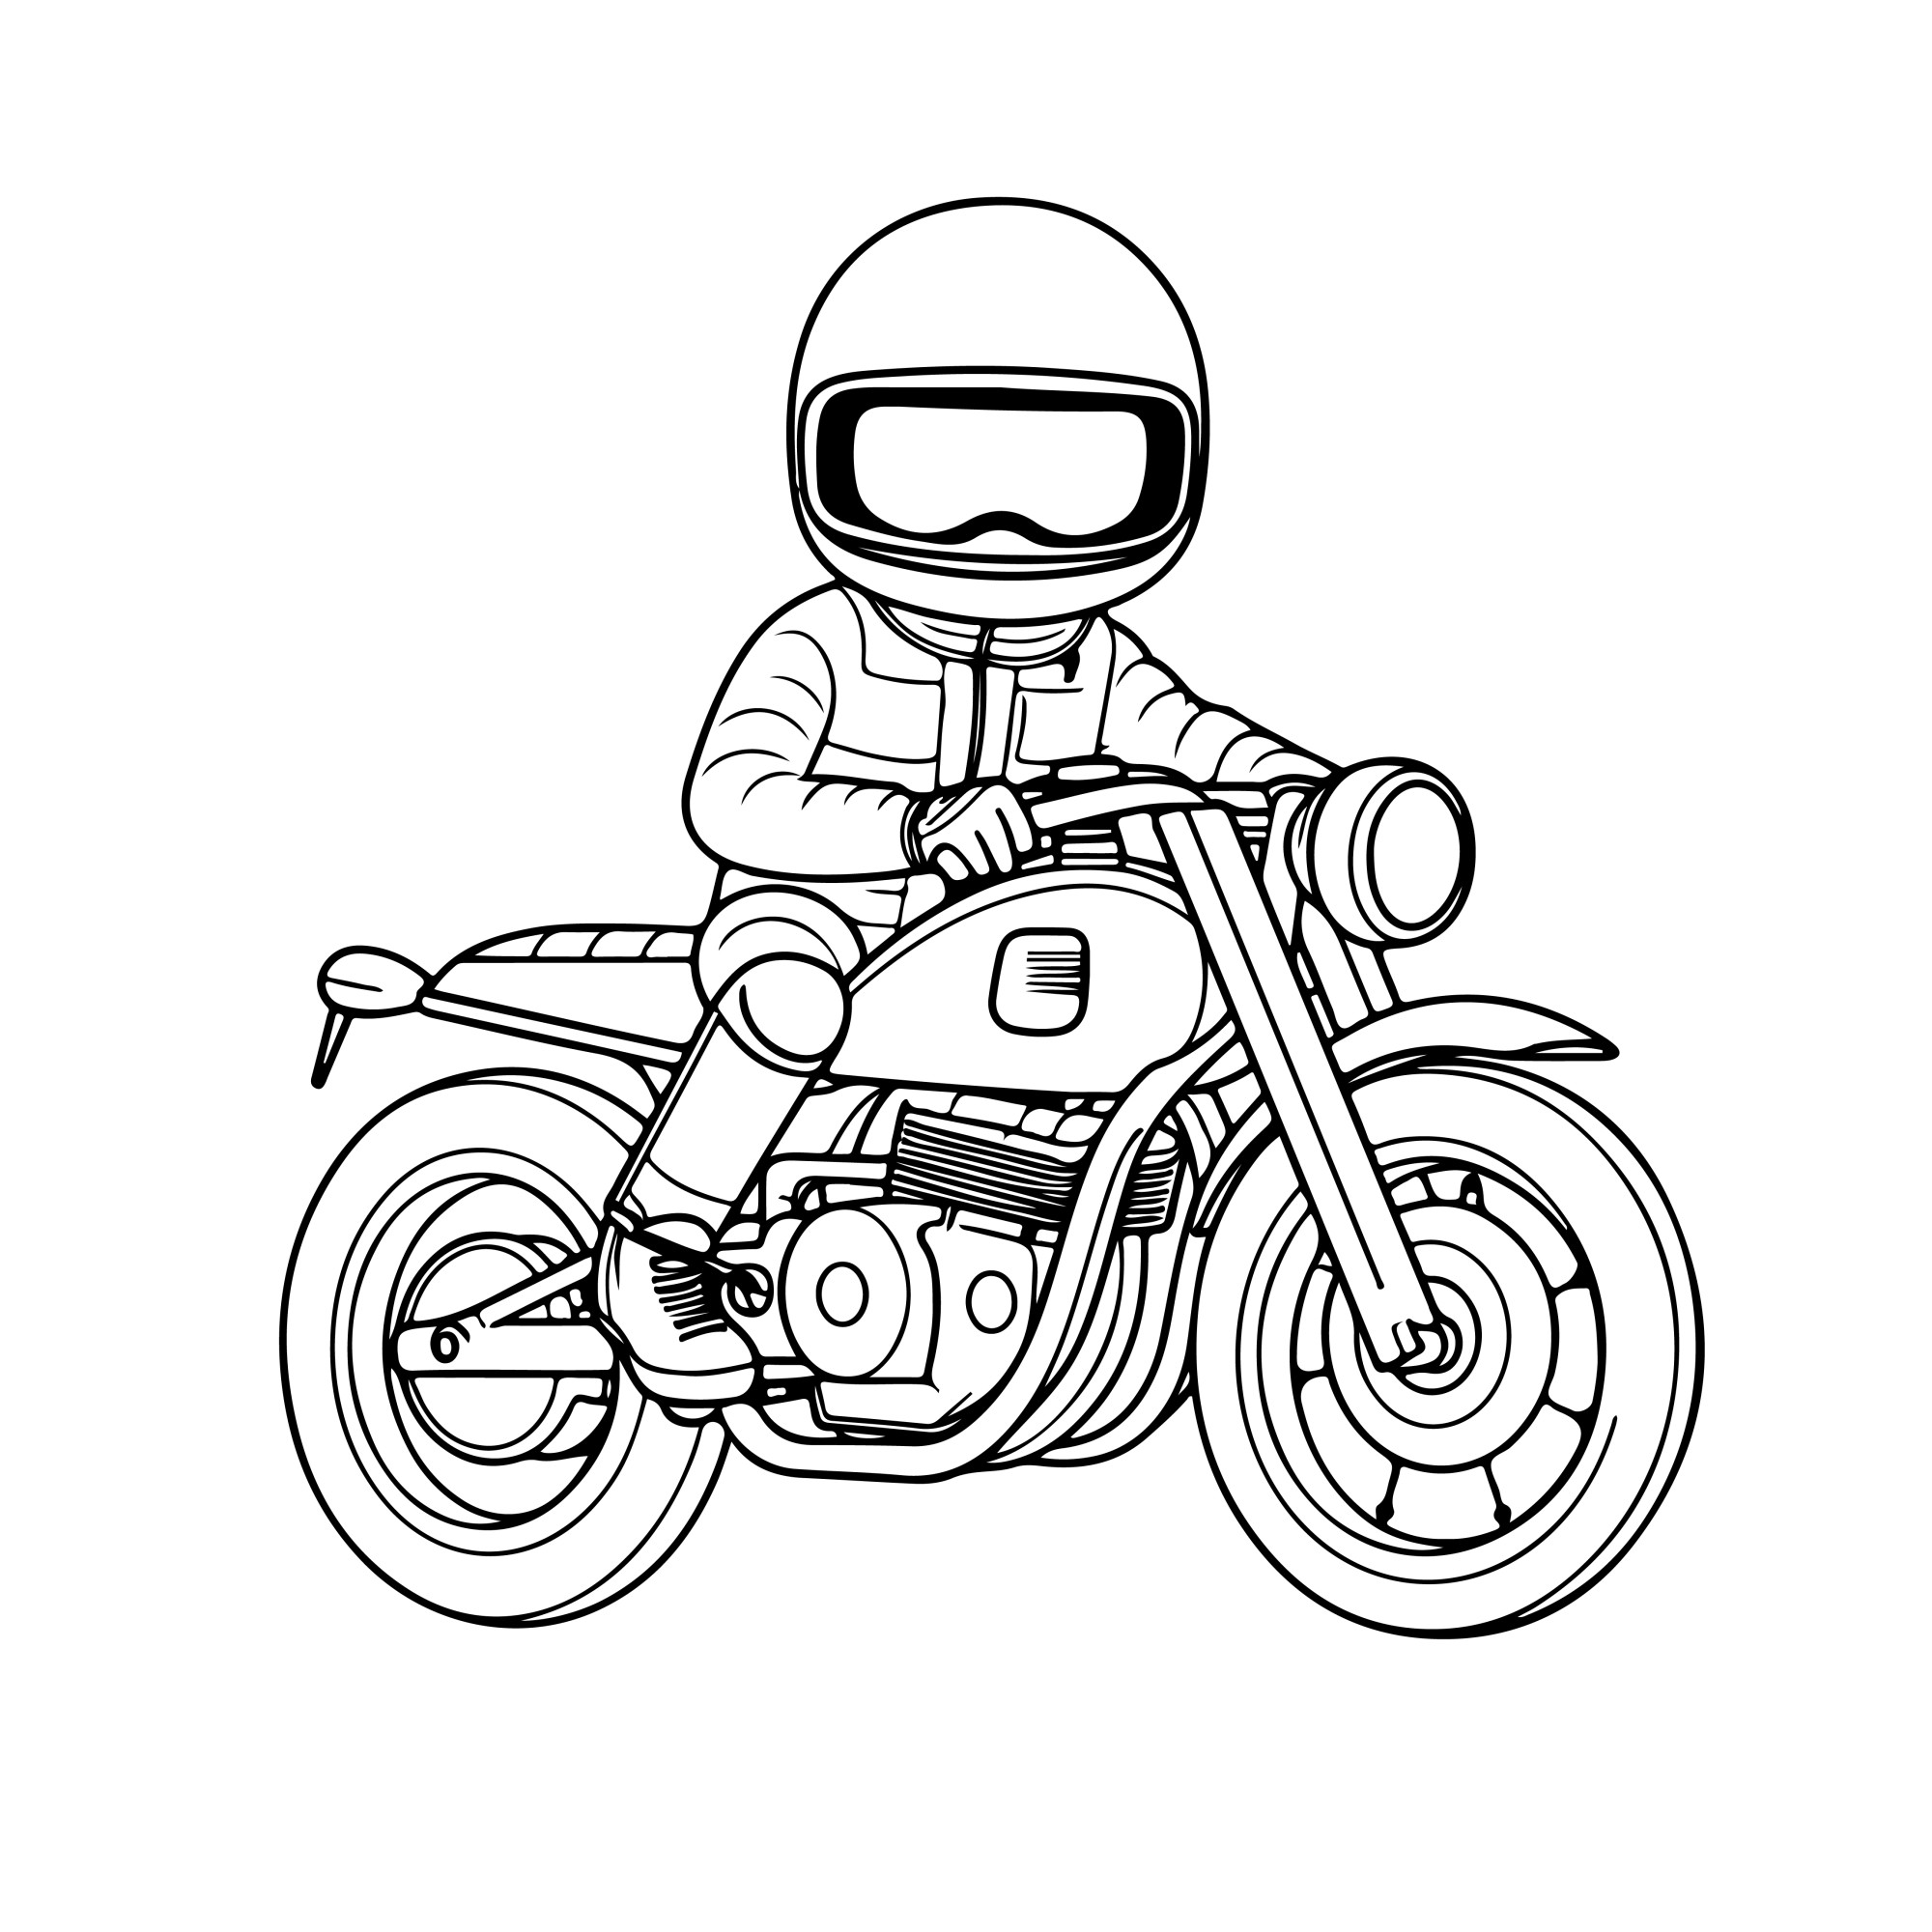 Раскраска для детей: мотоциклист в шлеме «Космический гонщик»